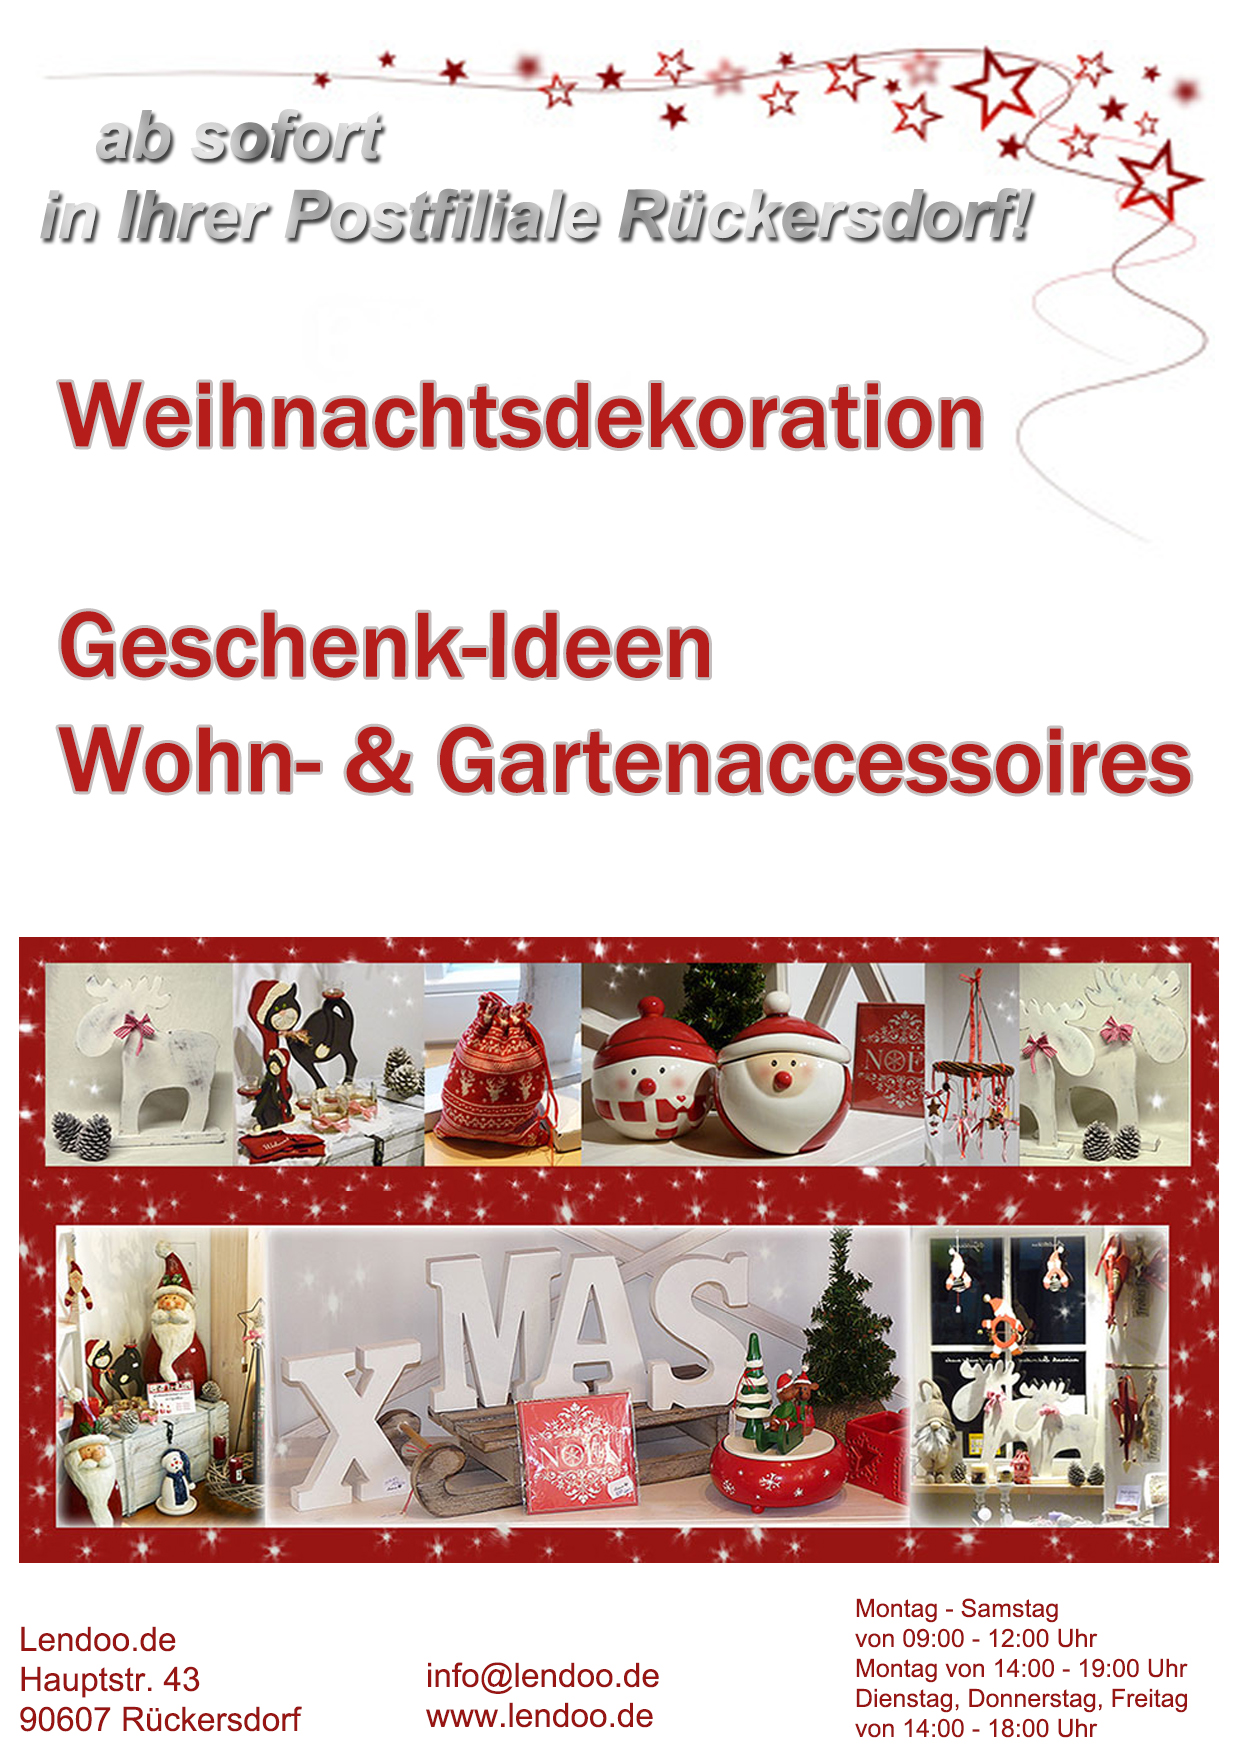 Weihnachtsdekoration in der Postfiliale Rückersdorf